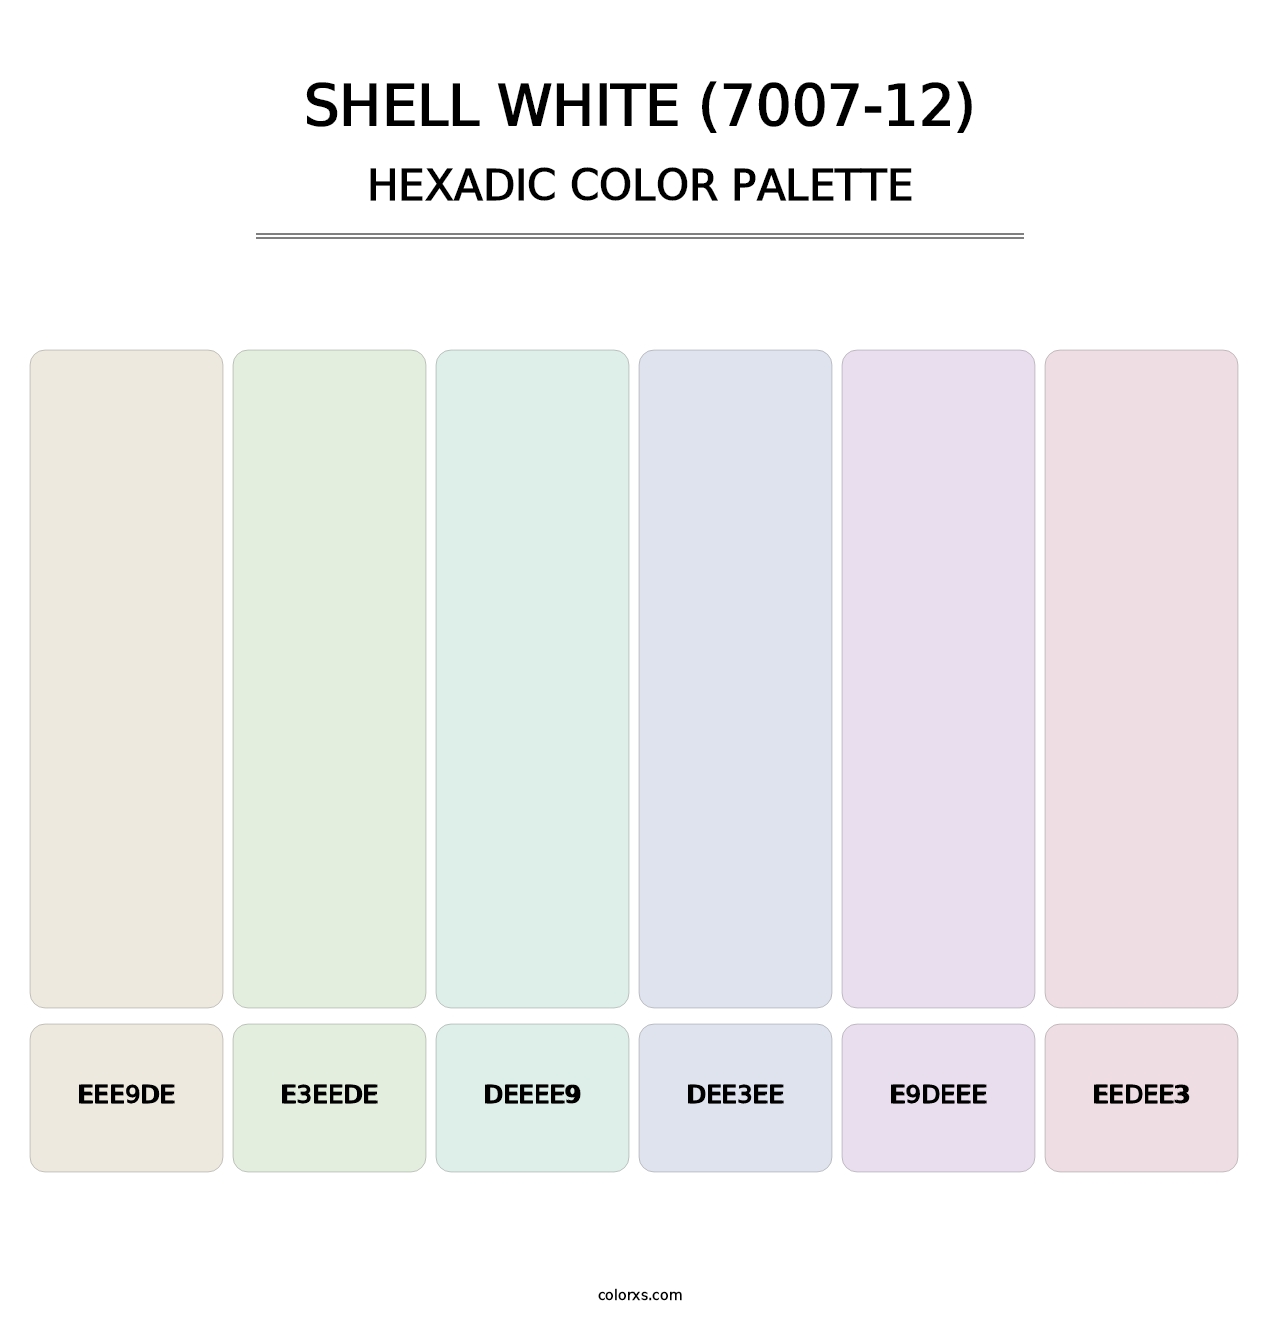 Shell White (7007-12) - Hexadic Color Palette